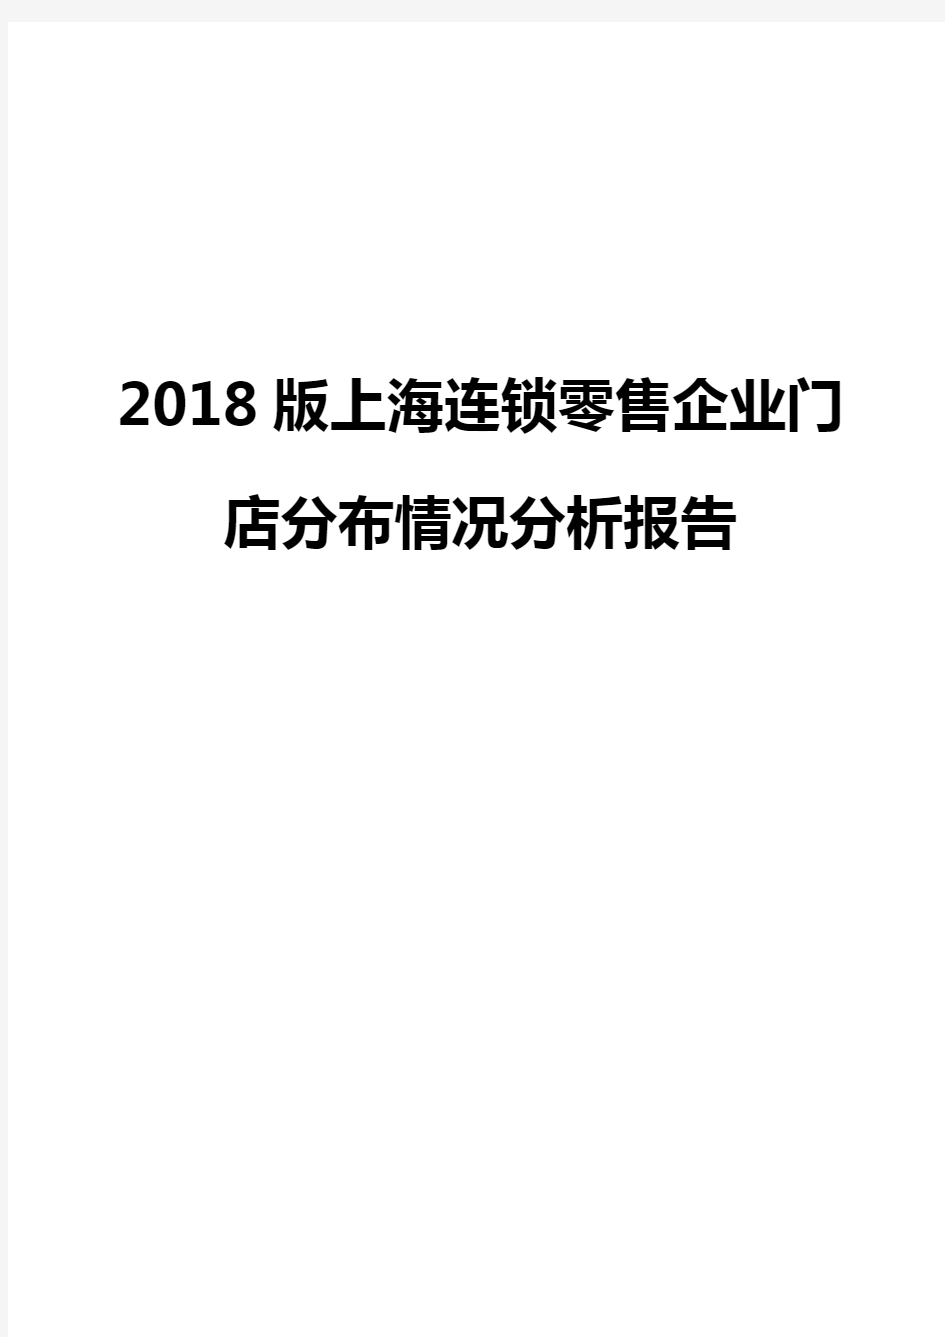 2018版上海连锁零售企业门店分布情况分析报告